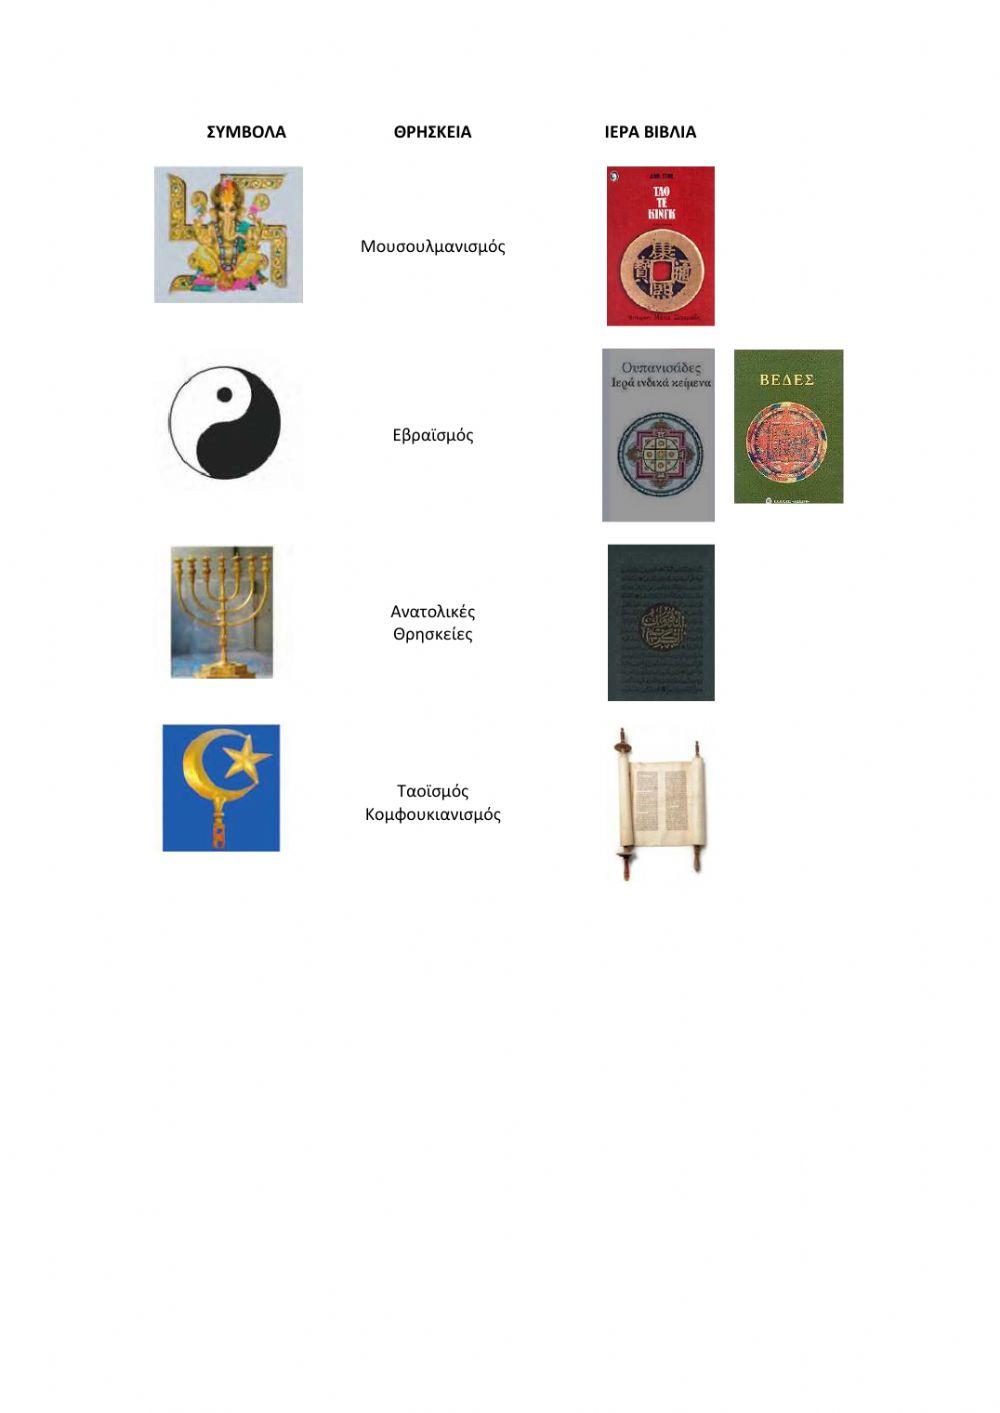 Σύμβολα και ιερά βιβλία από άλλες θρησκείες